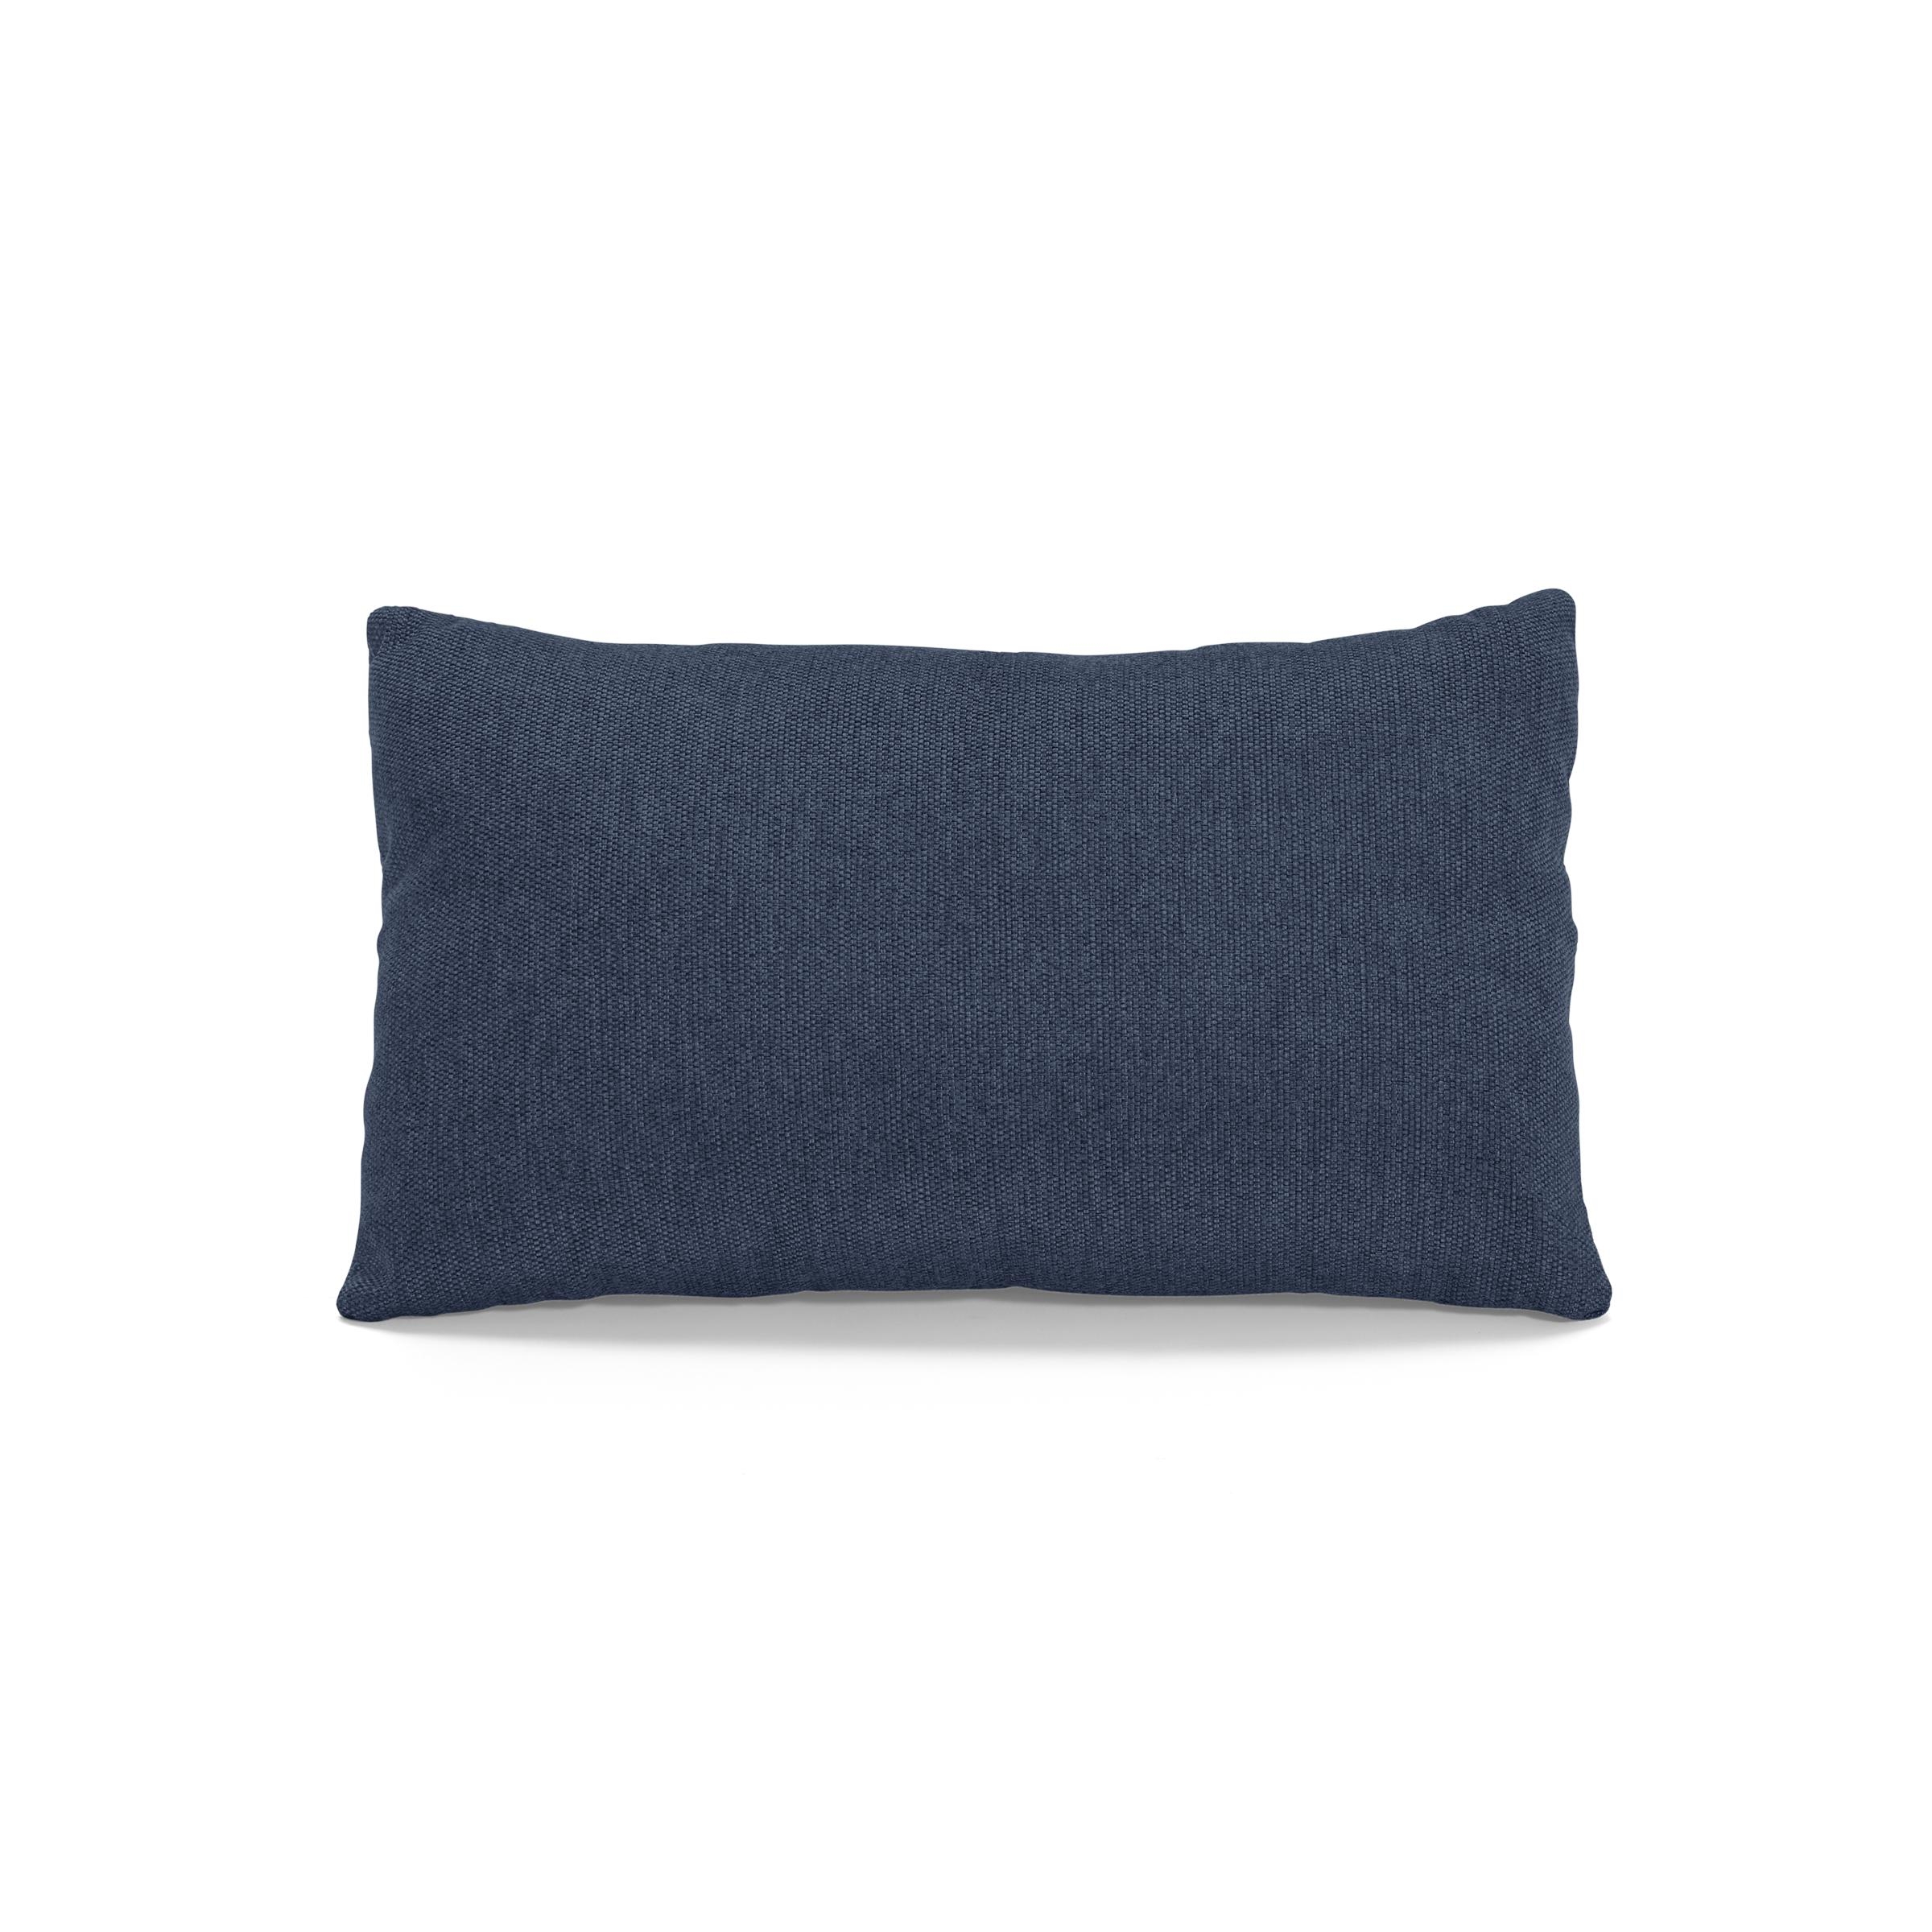 Nomad Lumbar Pillow Navy Blue - Image 0